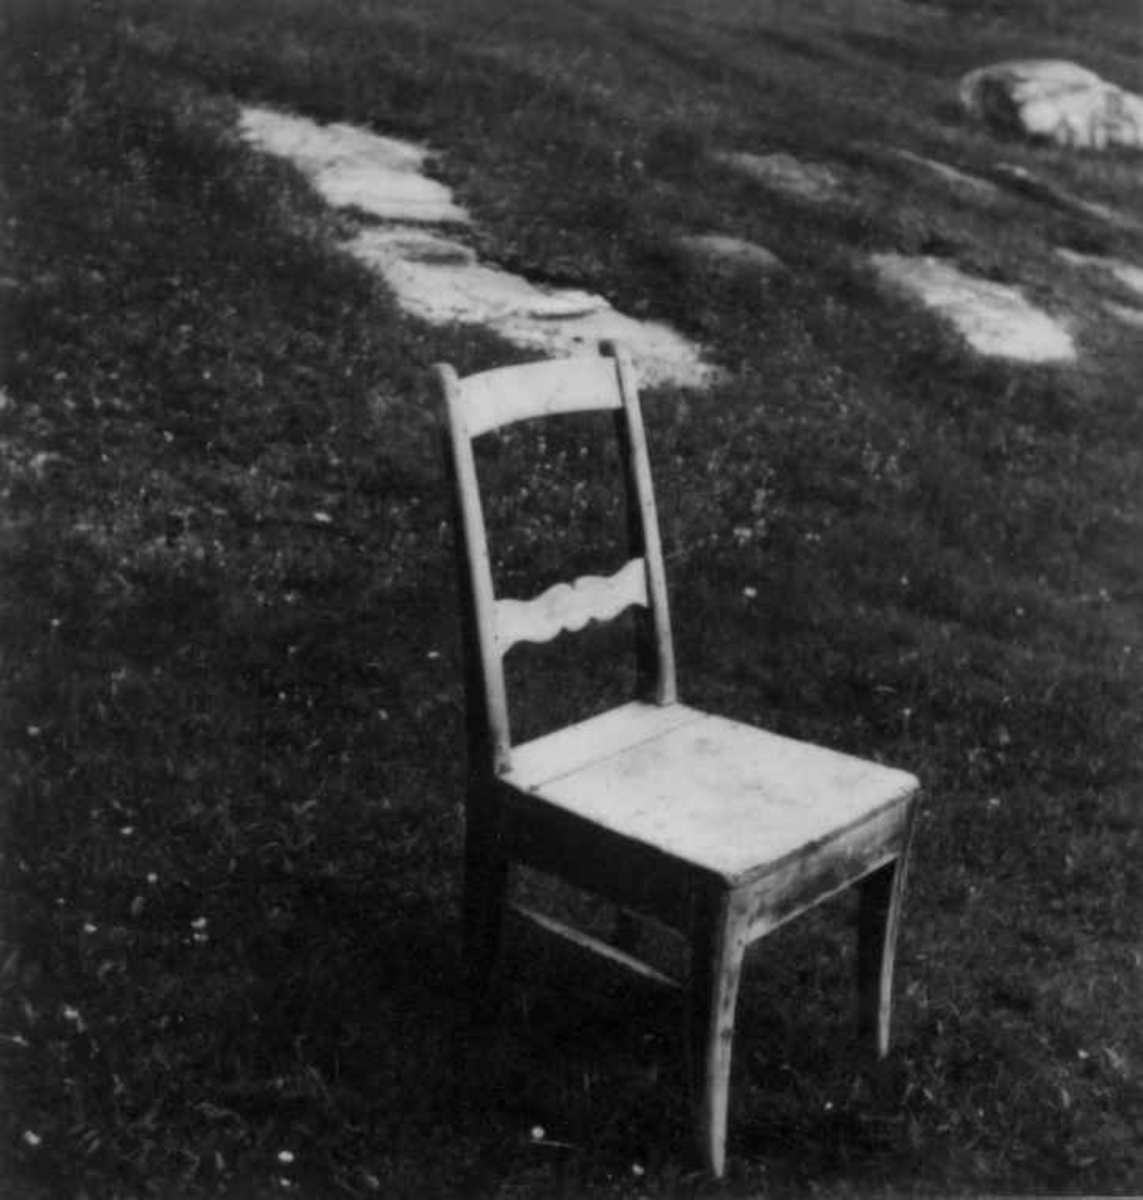 Stol, hjemmelaget moderne sjøsamisk arbeidsstol, ble brukt til å sitte på når en bandt fiskegarn eller spandt. Fra ca. 1870. Kåfjord, Alta, Finnmark.